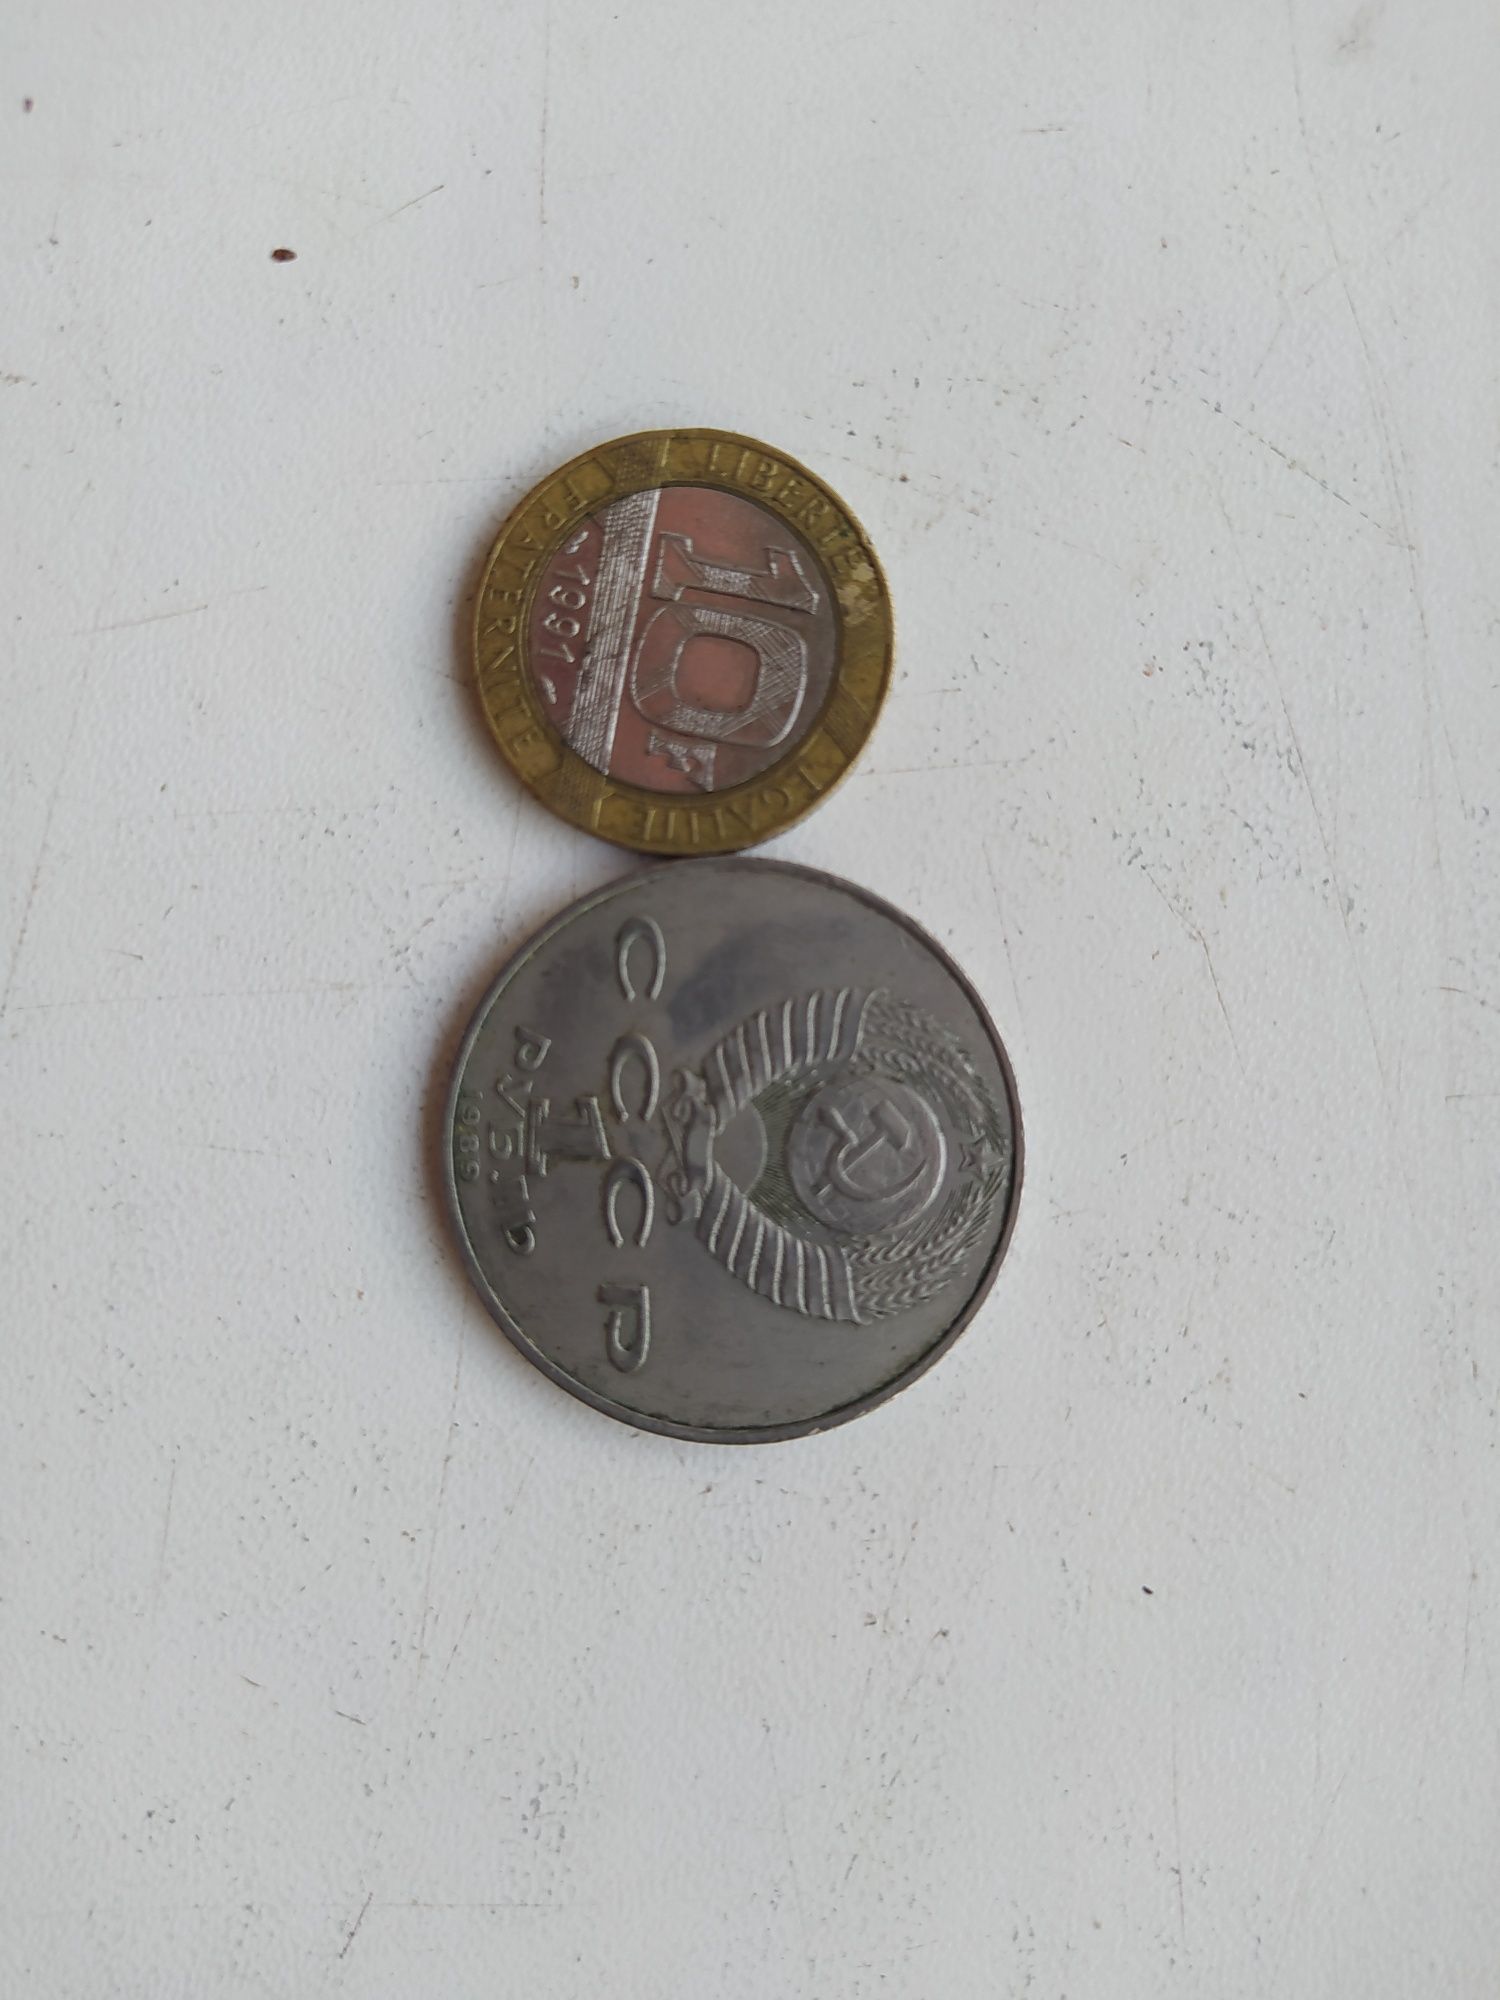 Продам монеты:грн, ссср, zl, €.